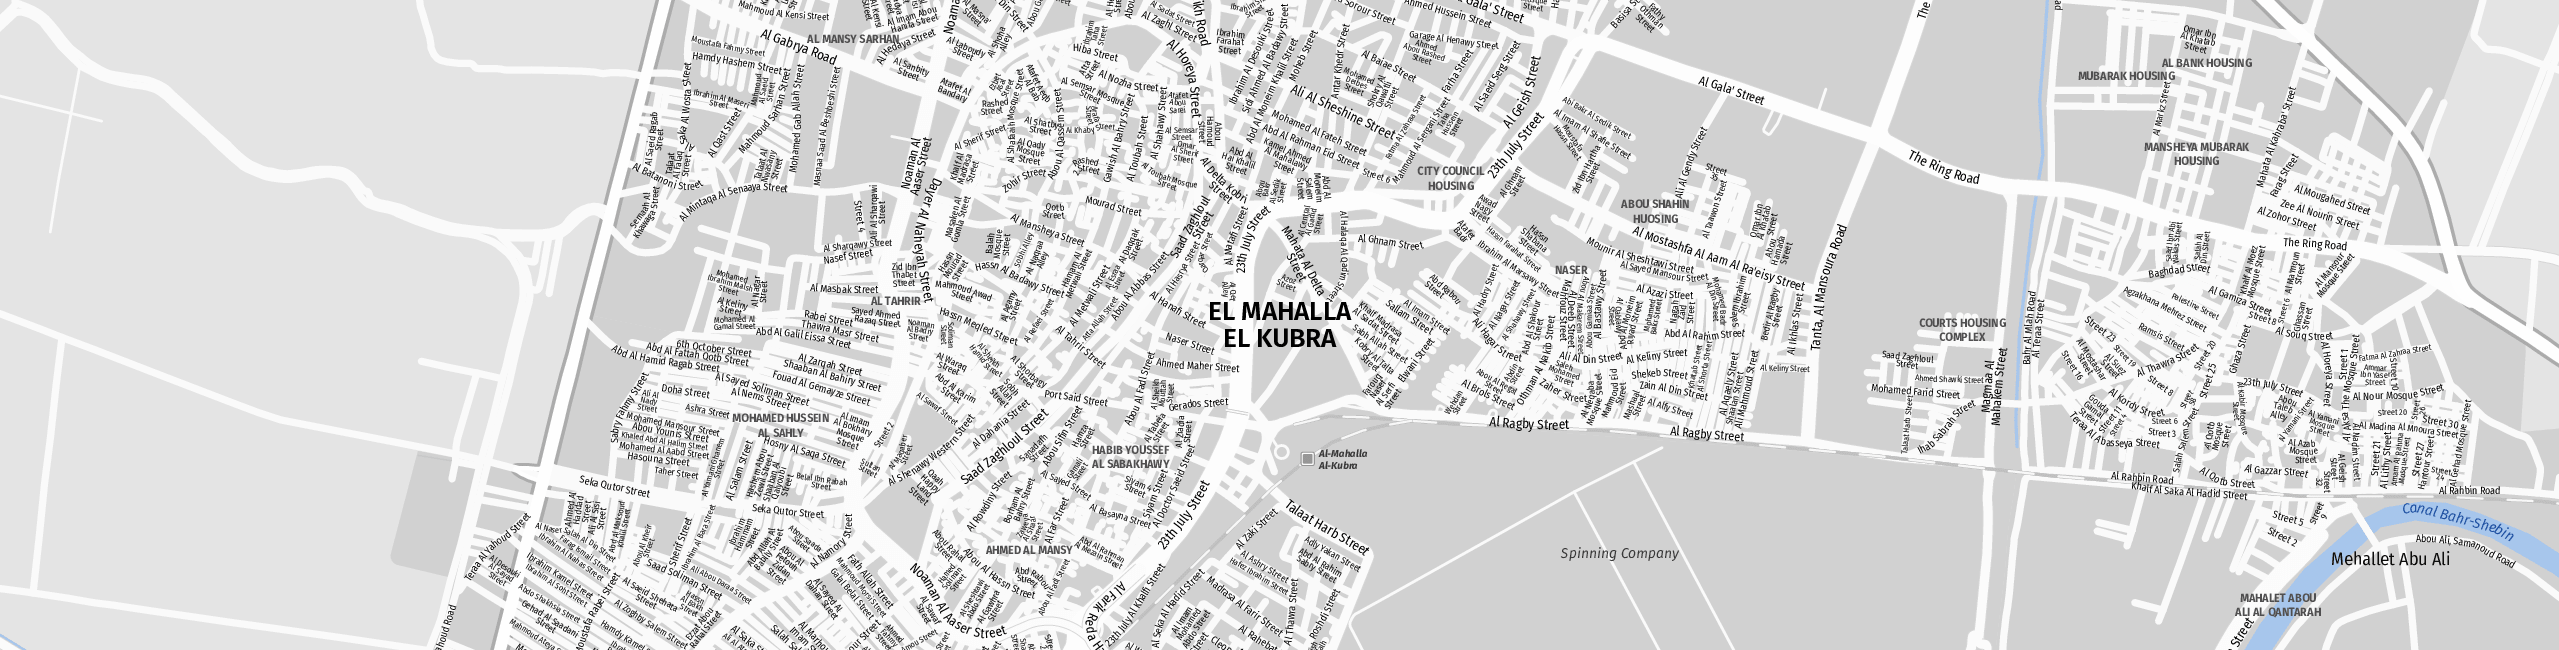 Stadtplan Mahalla al Kubra zum Downloaden.